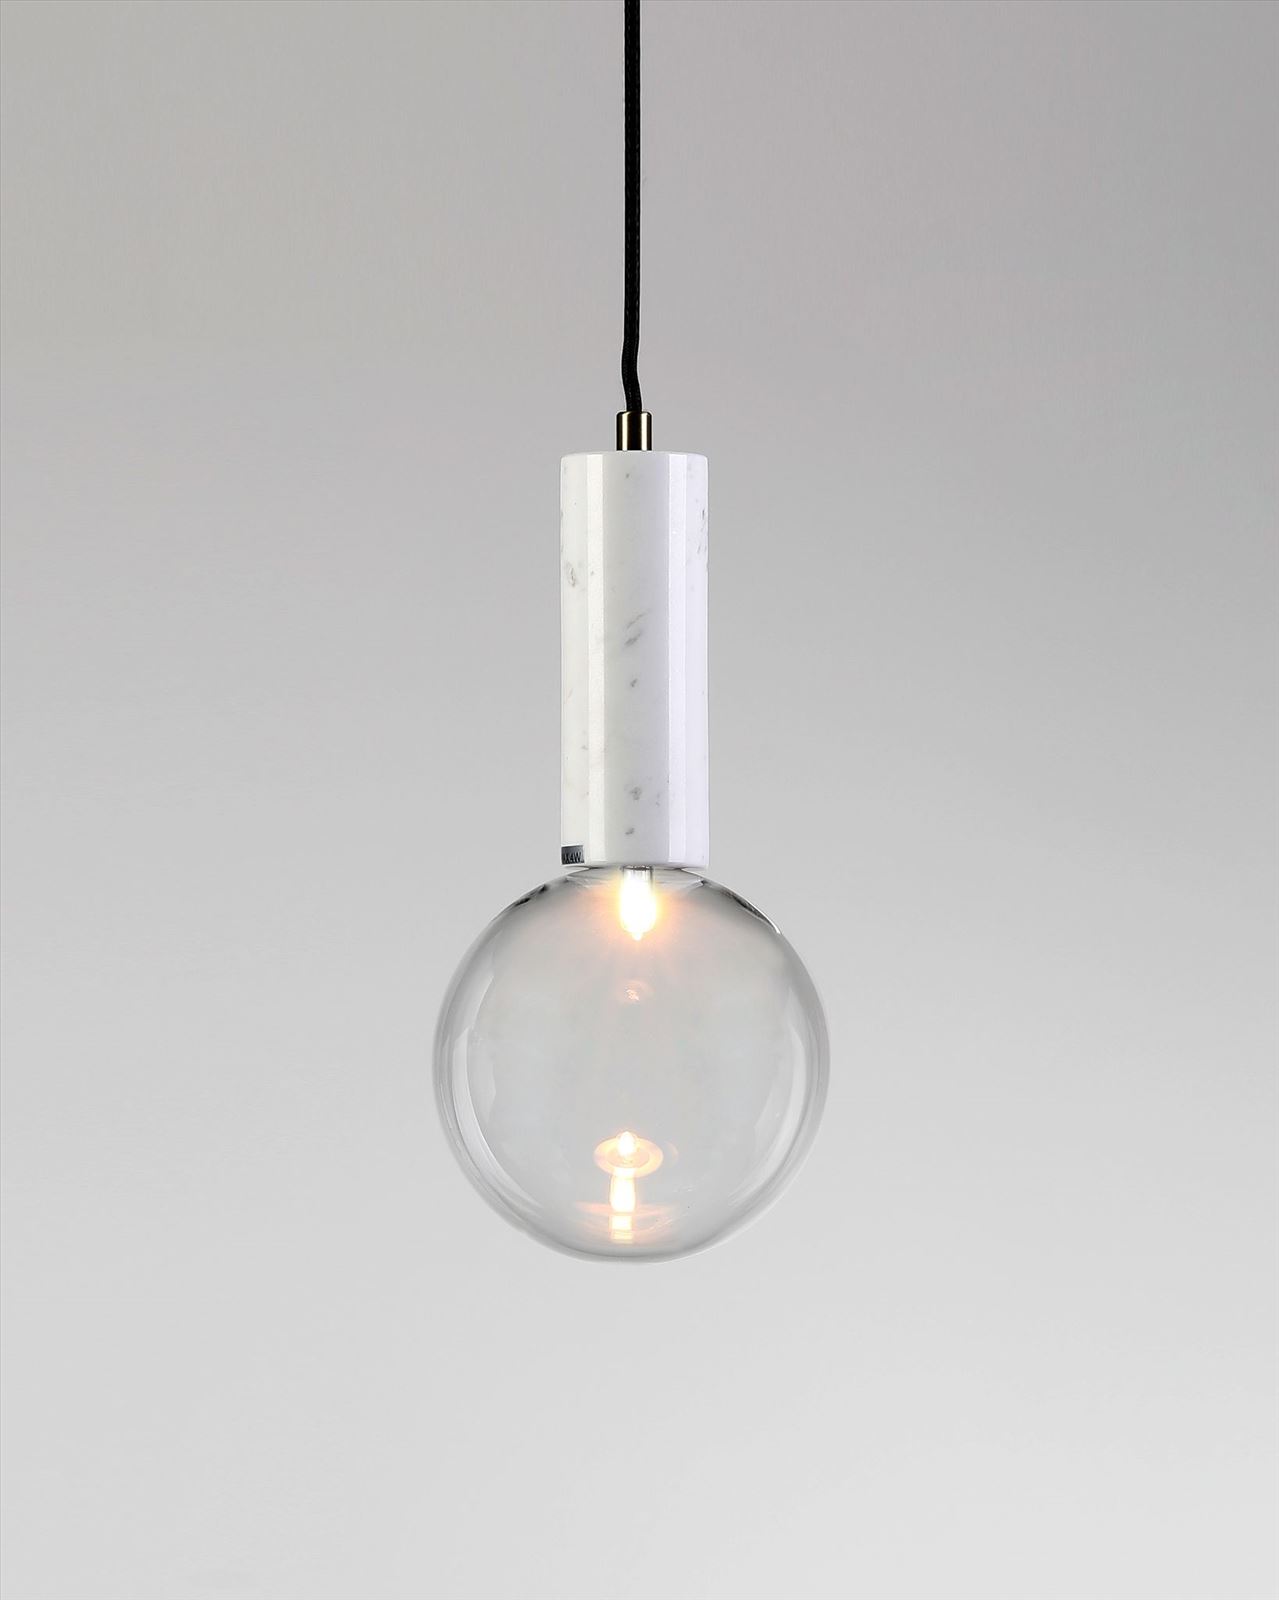 גופי תאורה בקטגוריית מנורות תליה שם המוצר Badolina • Dori Kimhi Lighting 4878